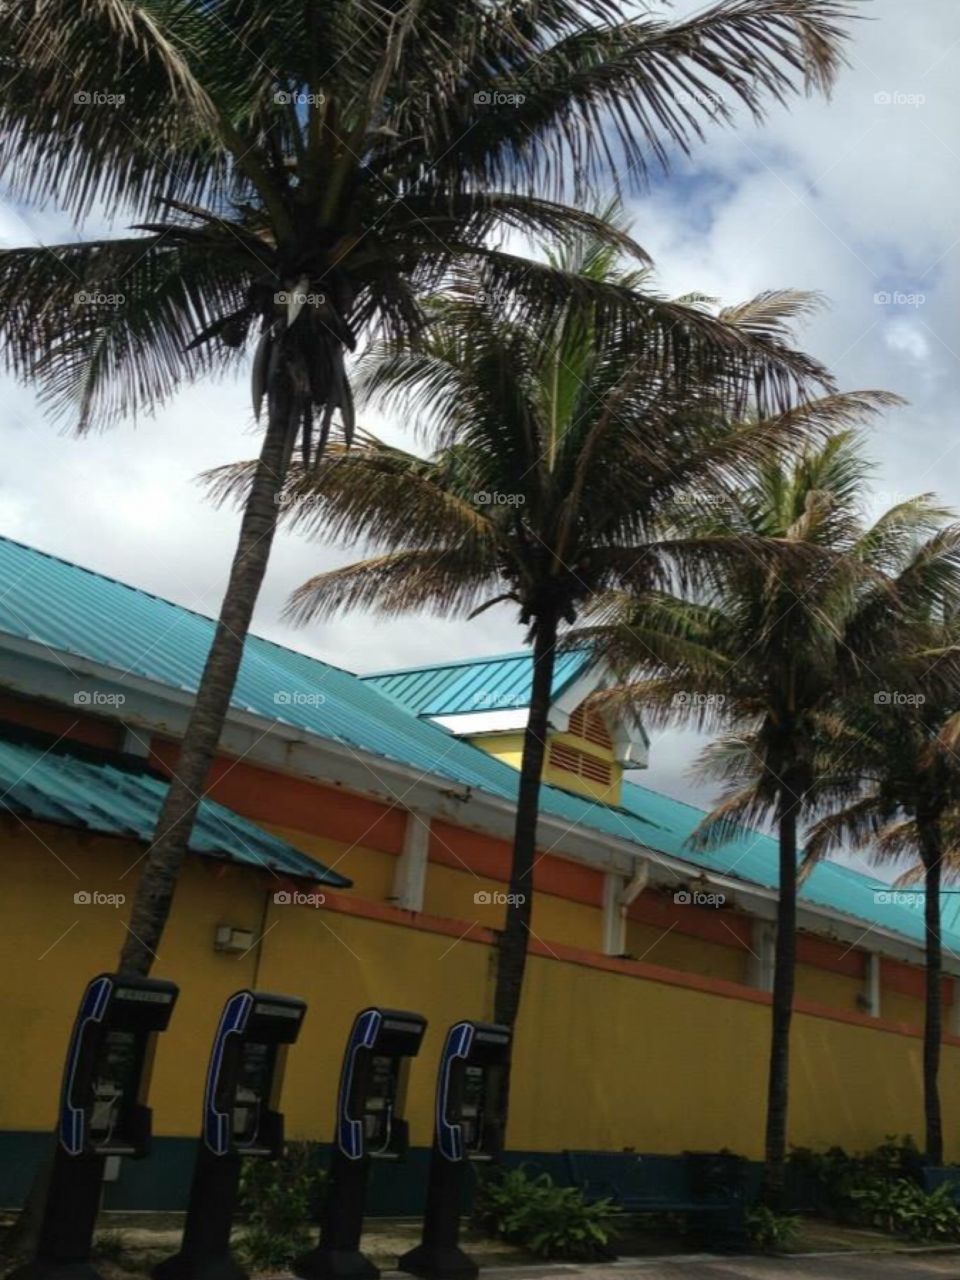 Bahamas palm trees 